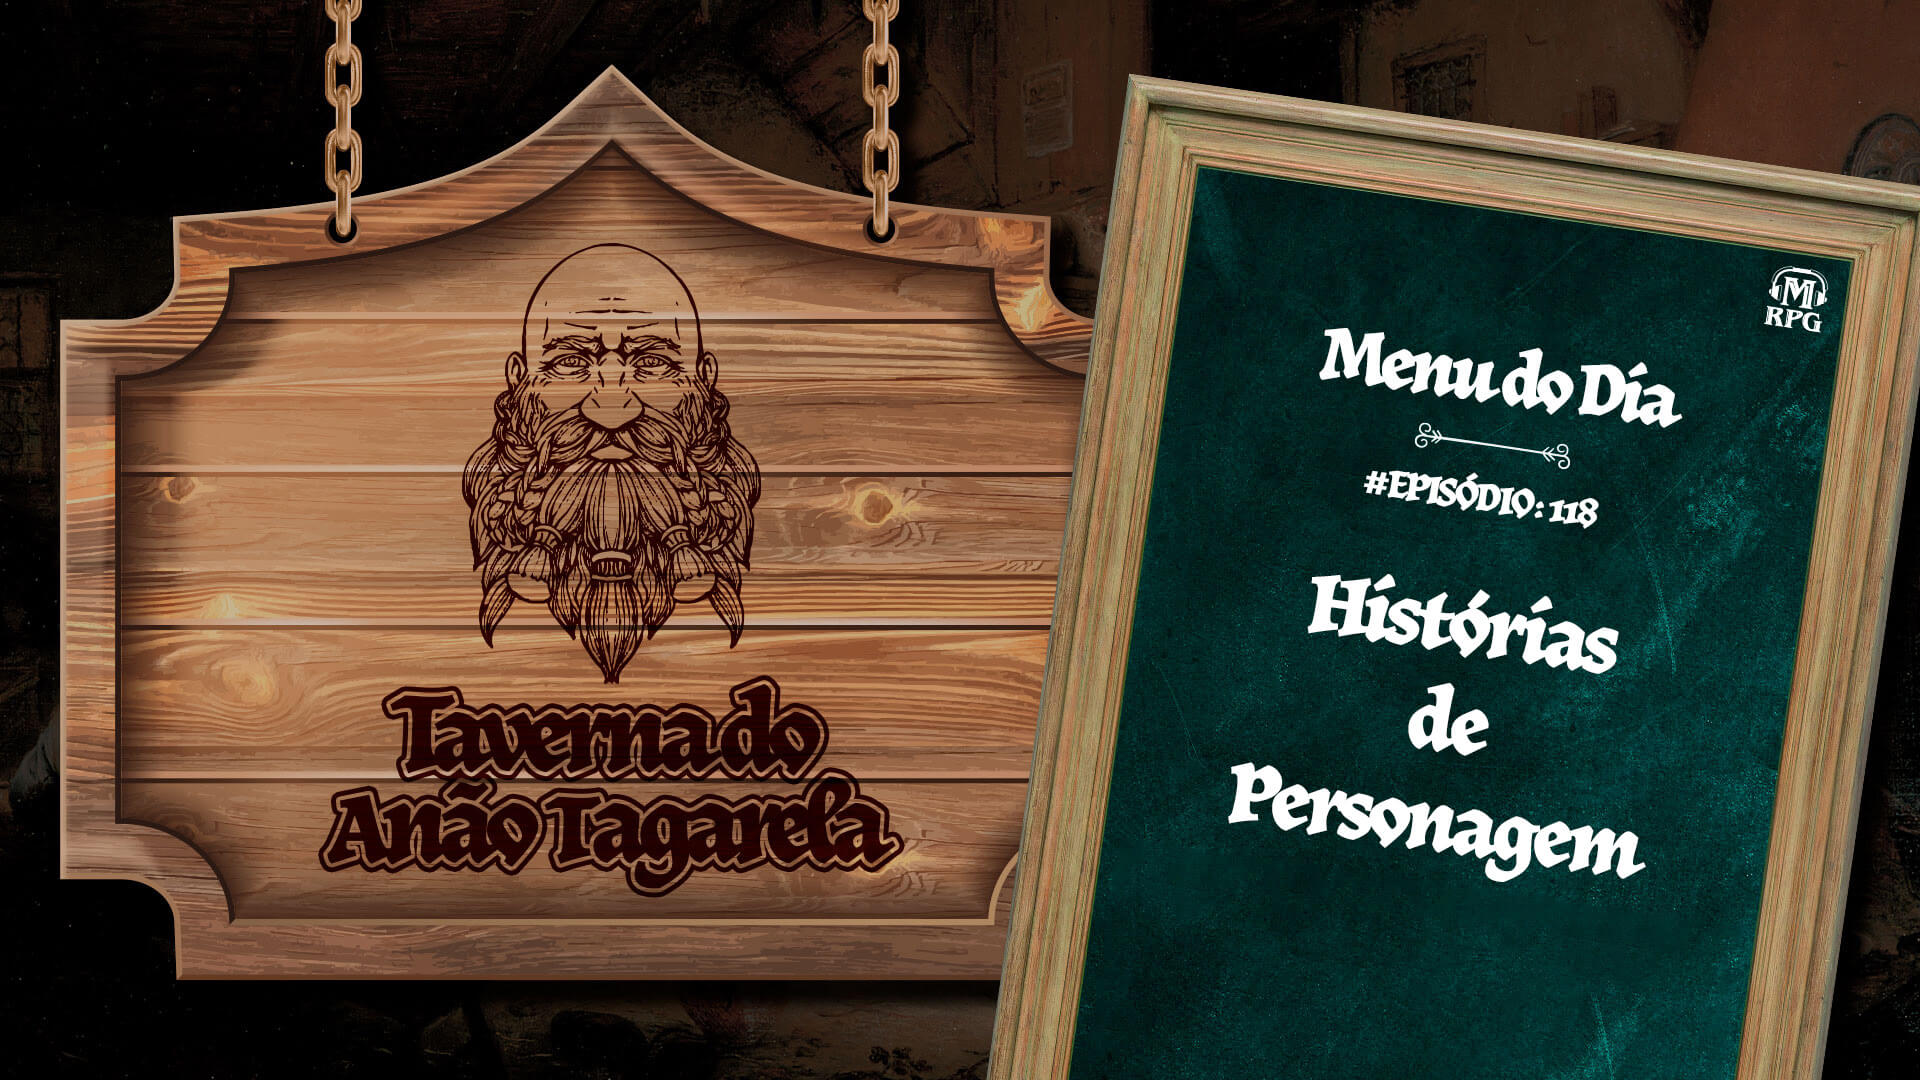 Histórias de Personagem – Taverna do Anão Tagarela #118